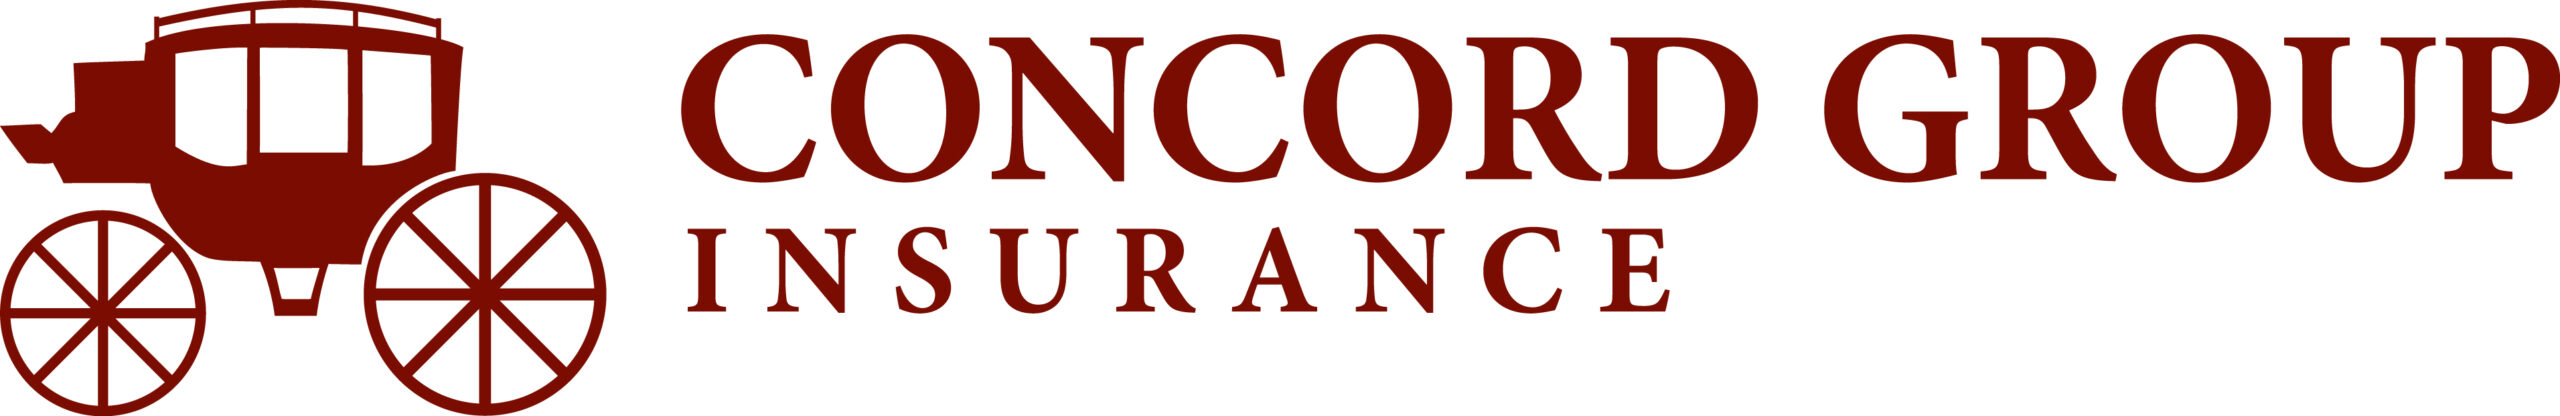 The Concord Logo